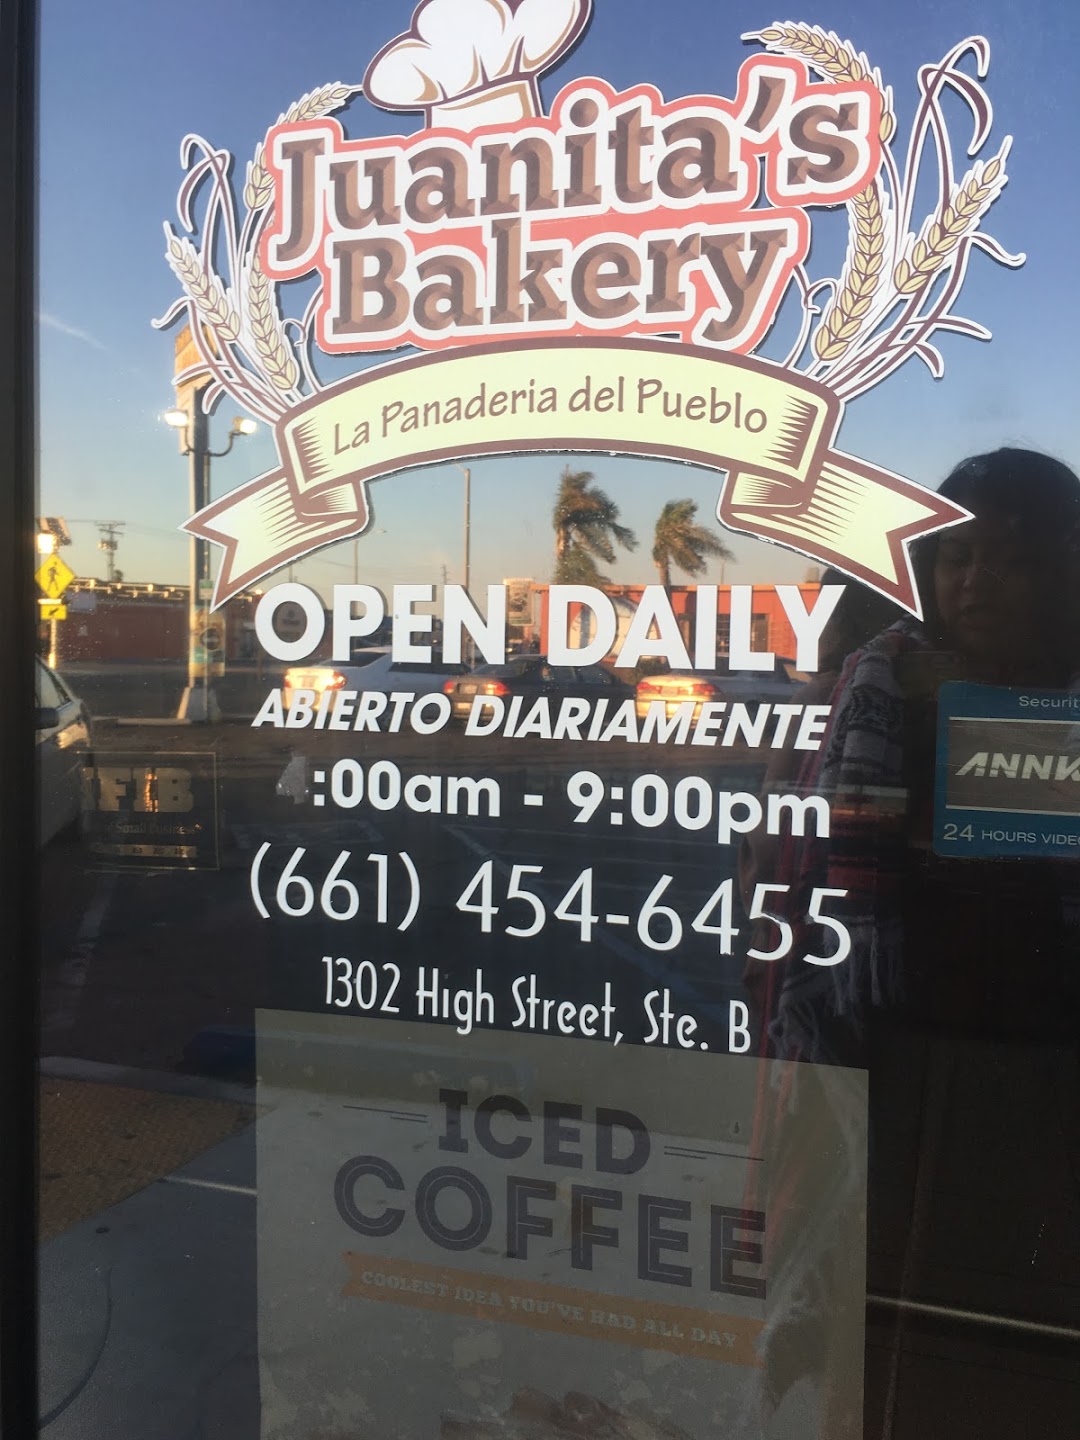 Juanitas Bakery